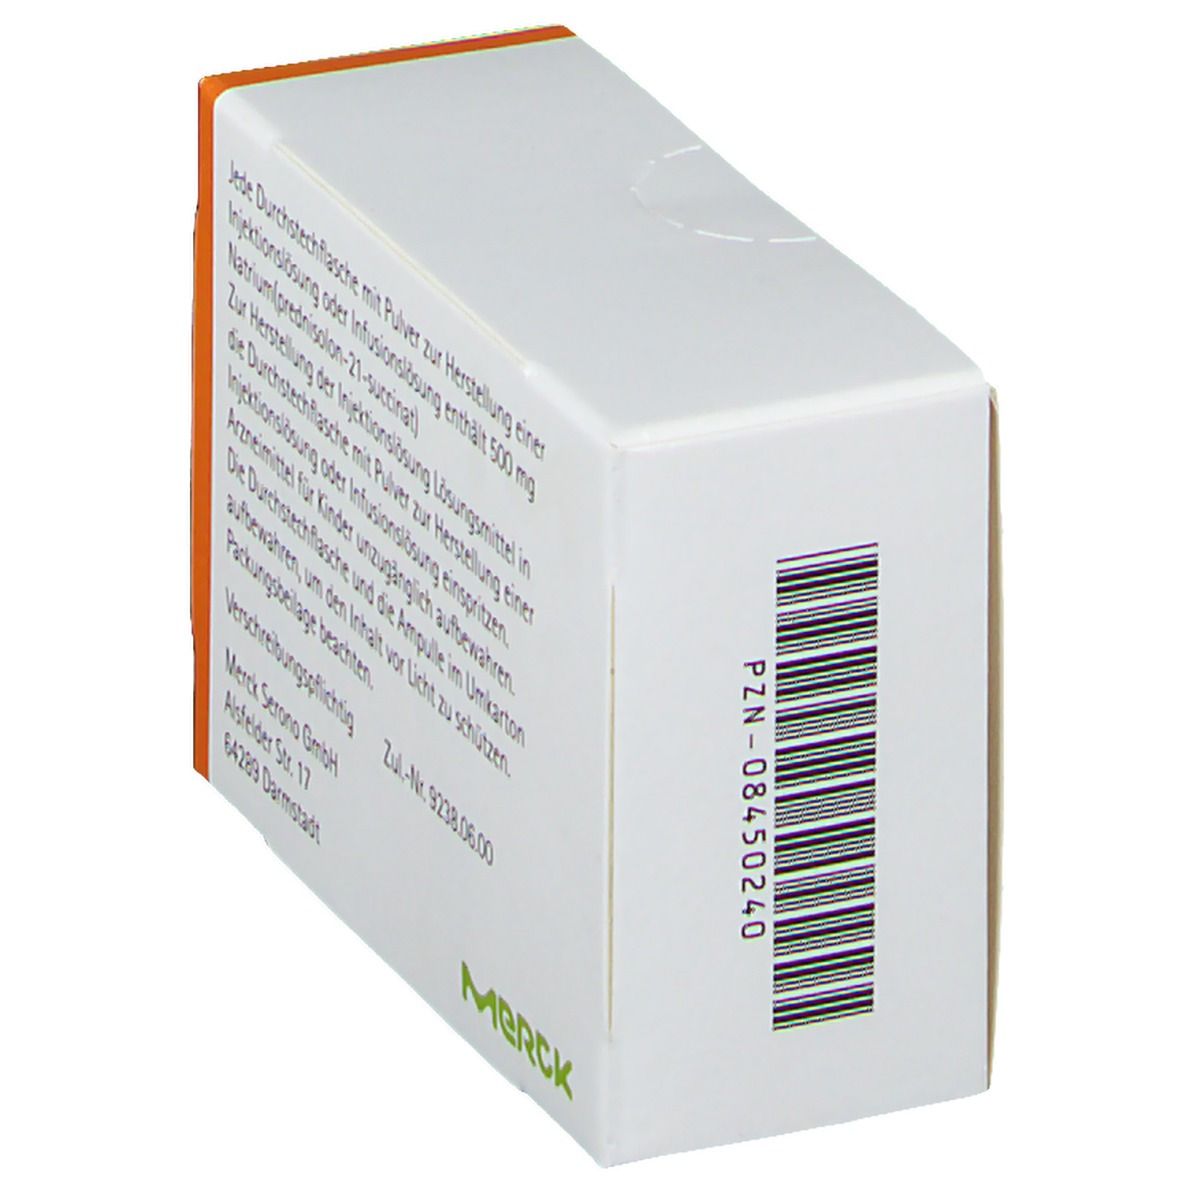 Solu-Decortin® H 500 mg